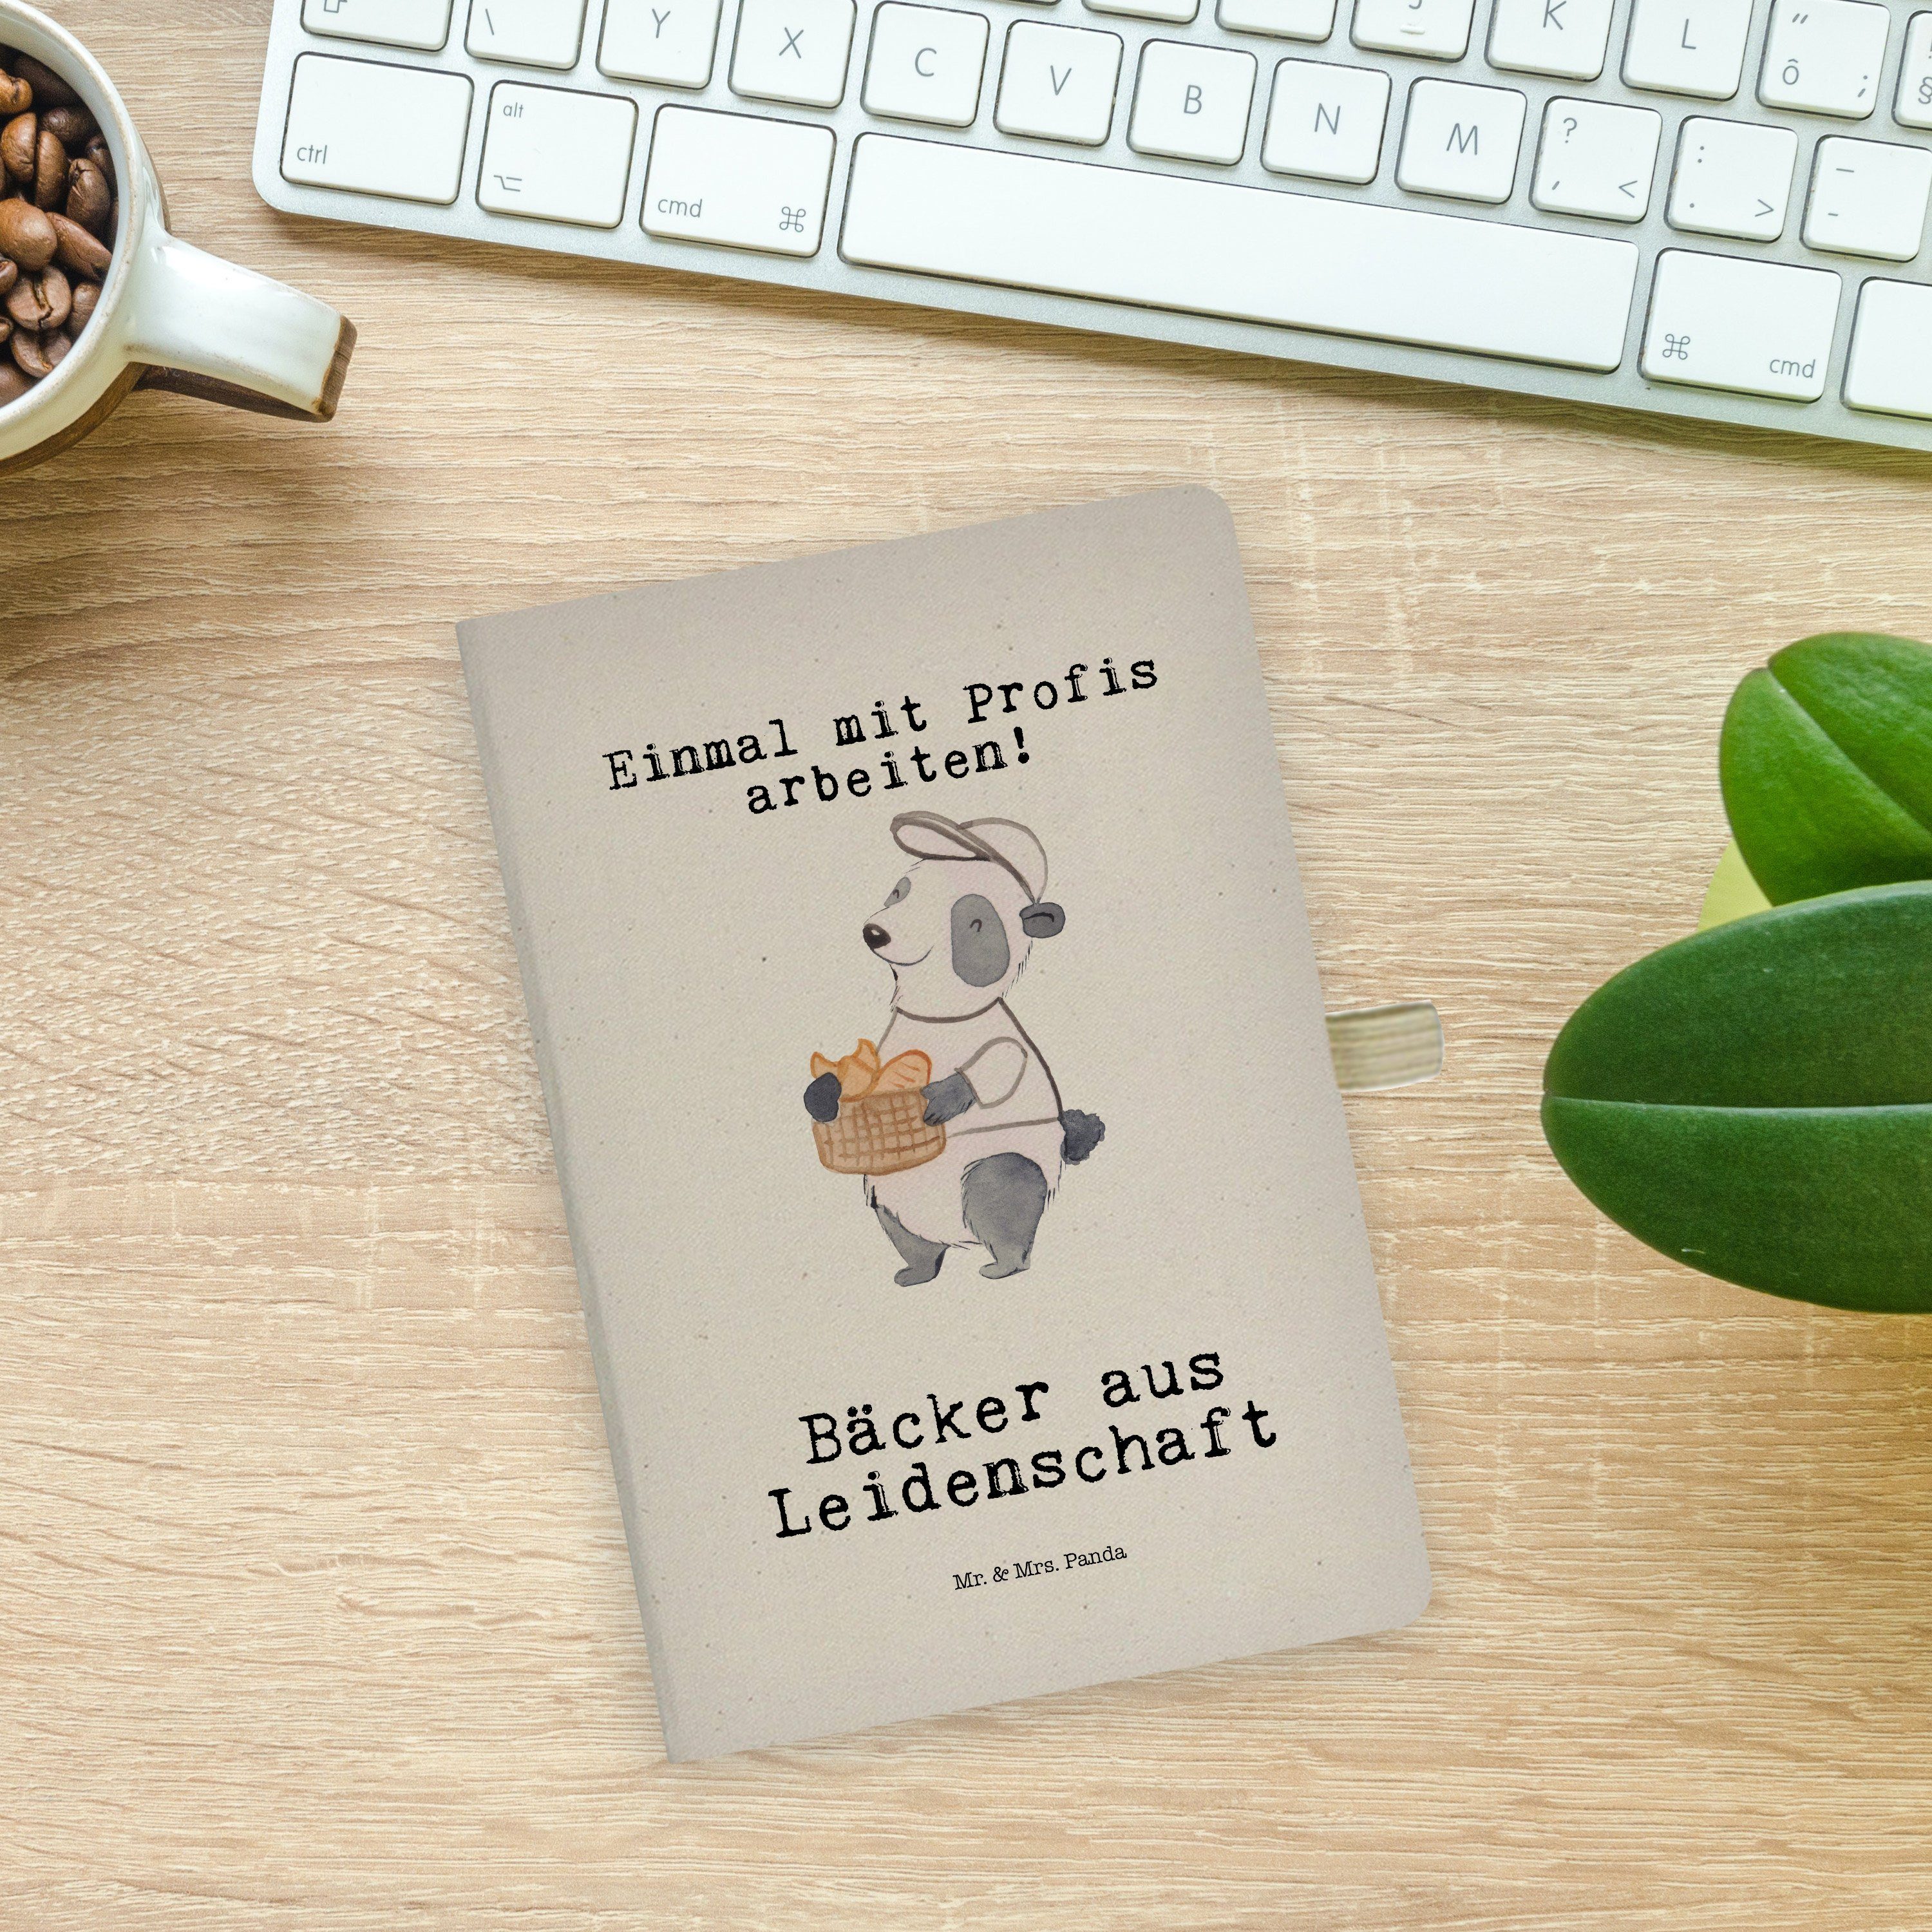 & Mrs. Mitarbeiter, Panda - Mr. Bäcker Mrs. Panda Mr. Geschenk, - Rente, & Leidenschaft Transparent aus Notizbuch